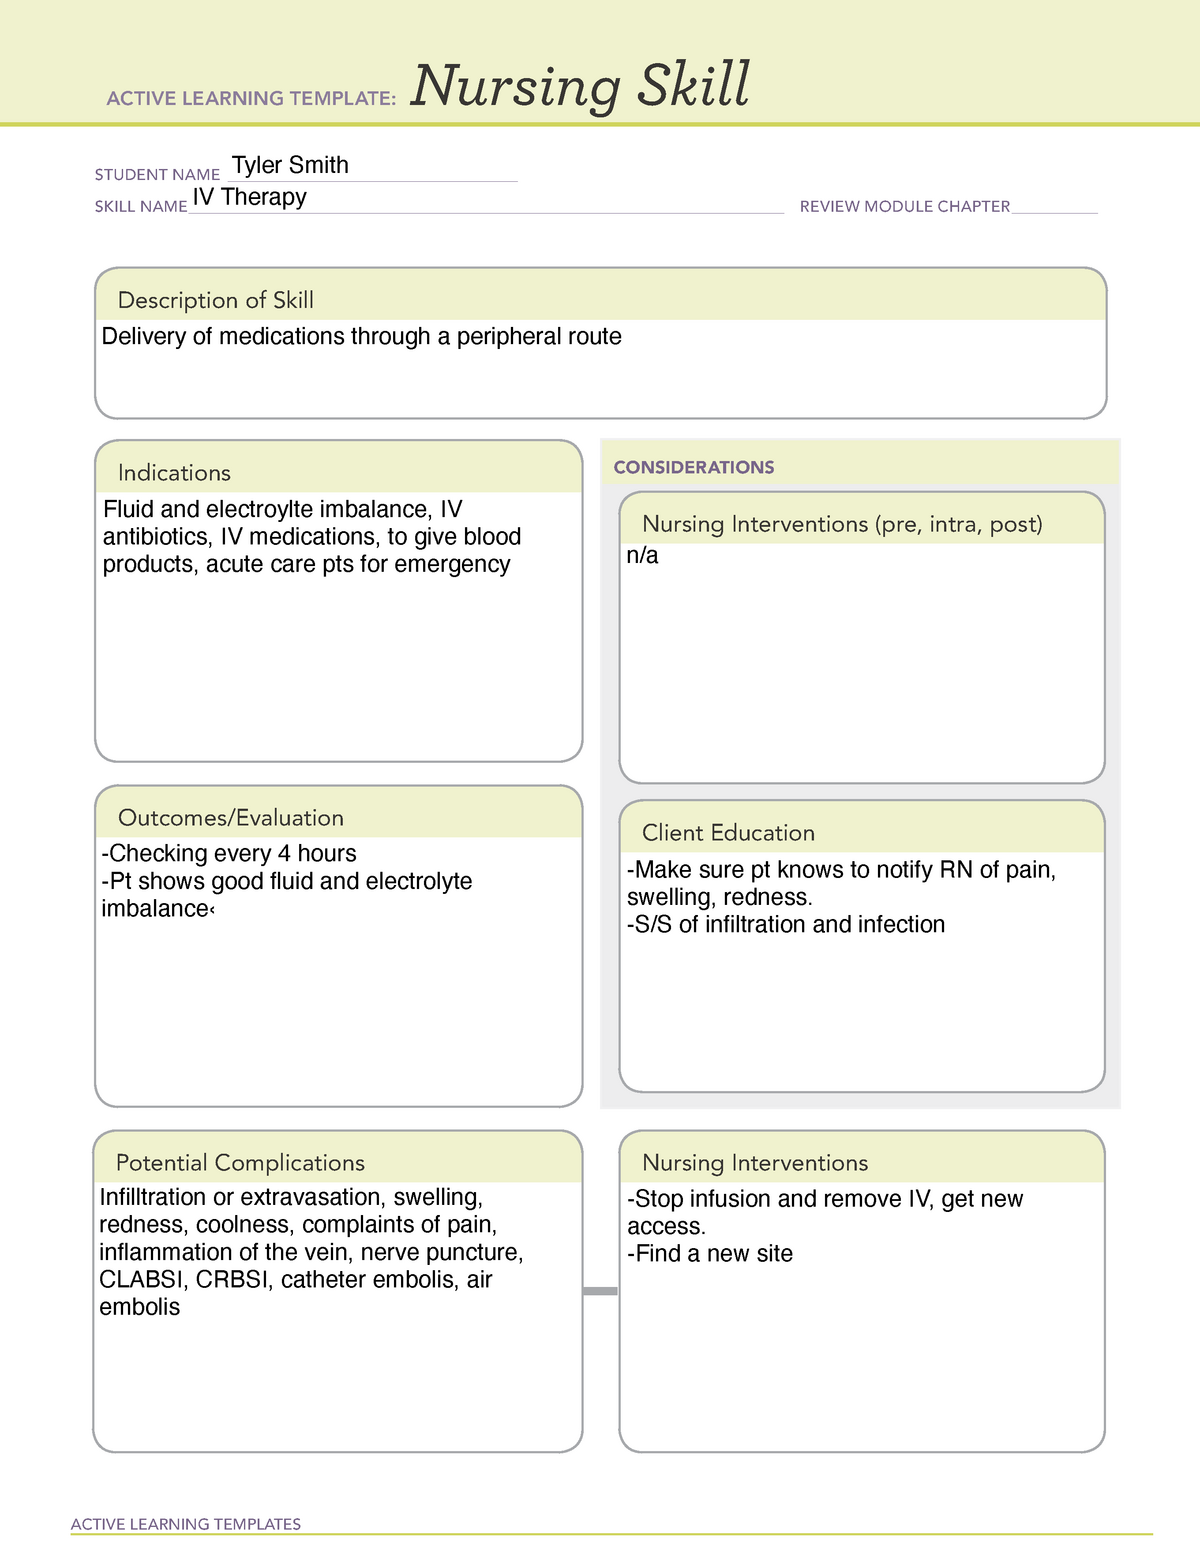 ati-nursing-skill-template-example